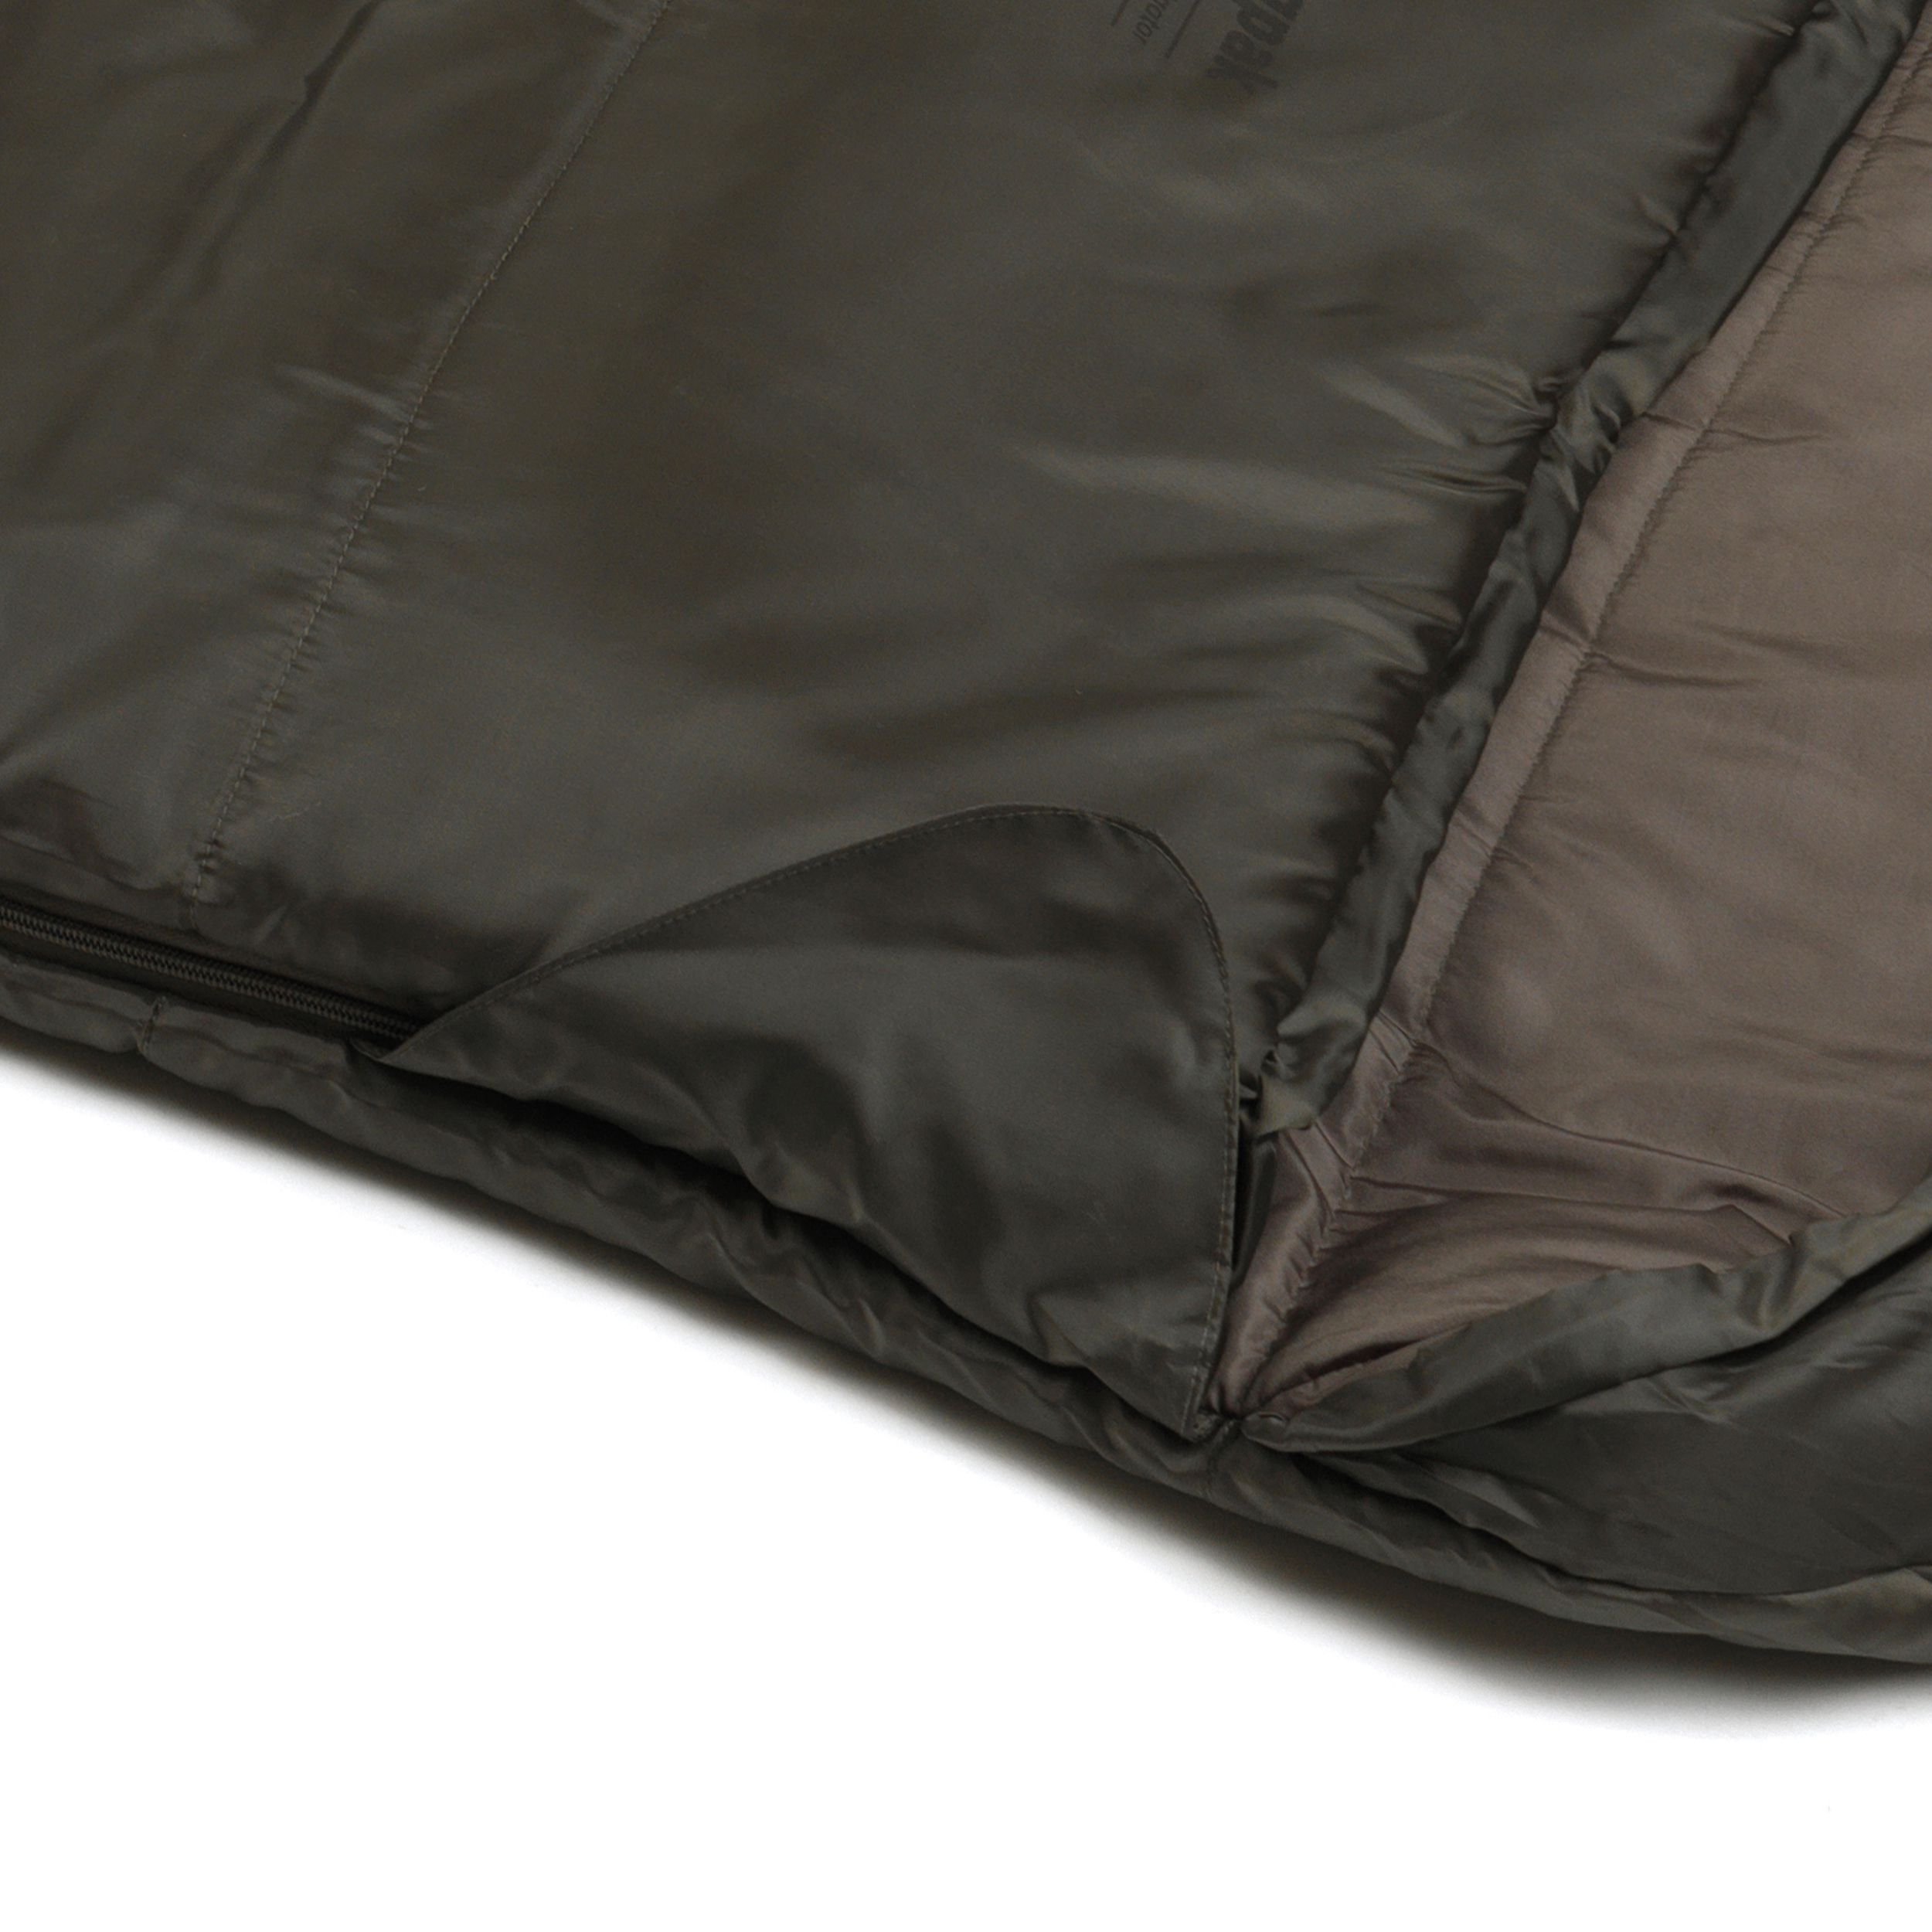 Olive Left Hand Zip Snugpak Basecamp Ops Navigator Sleeping Bag with Compression Stuff Sack 